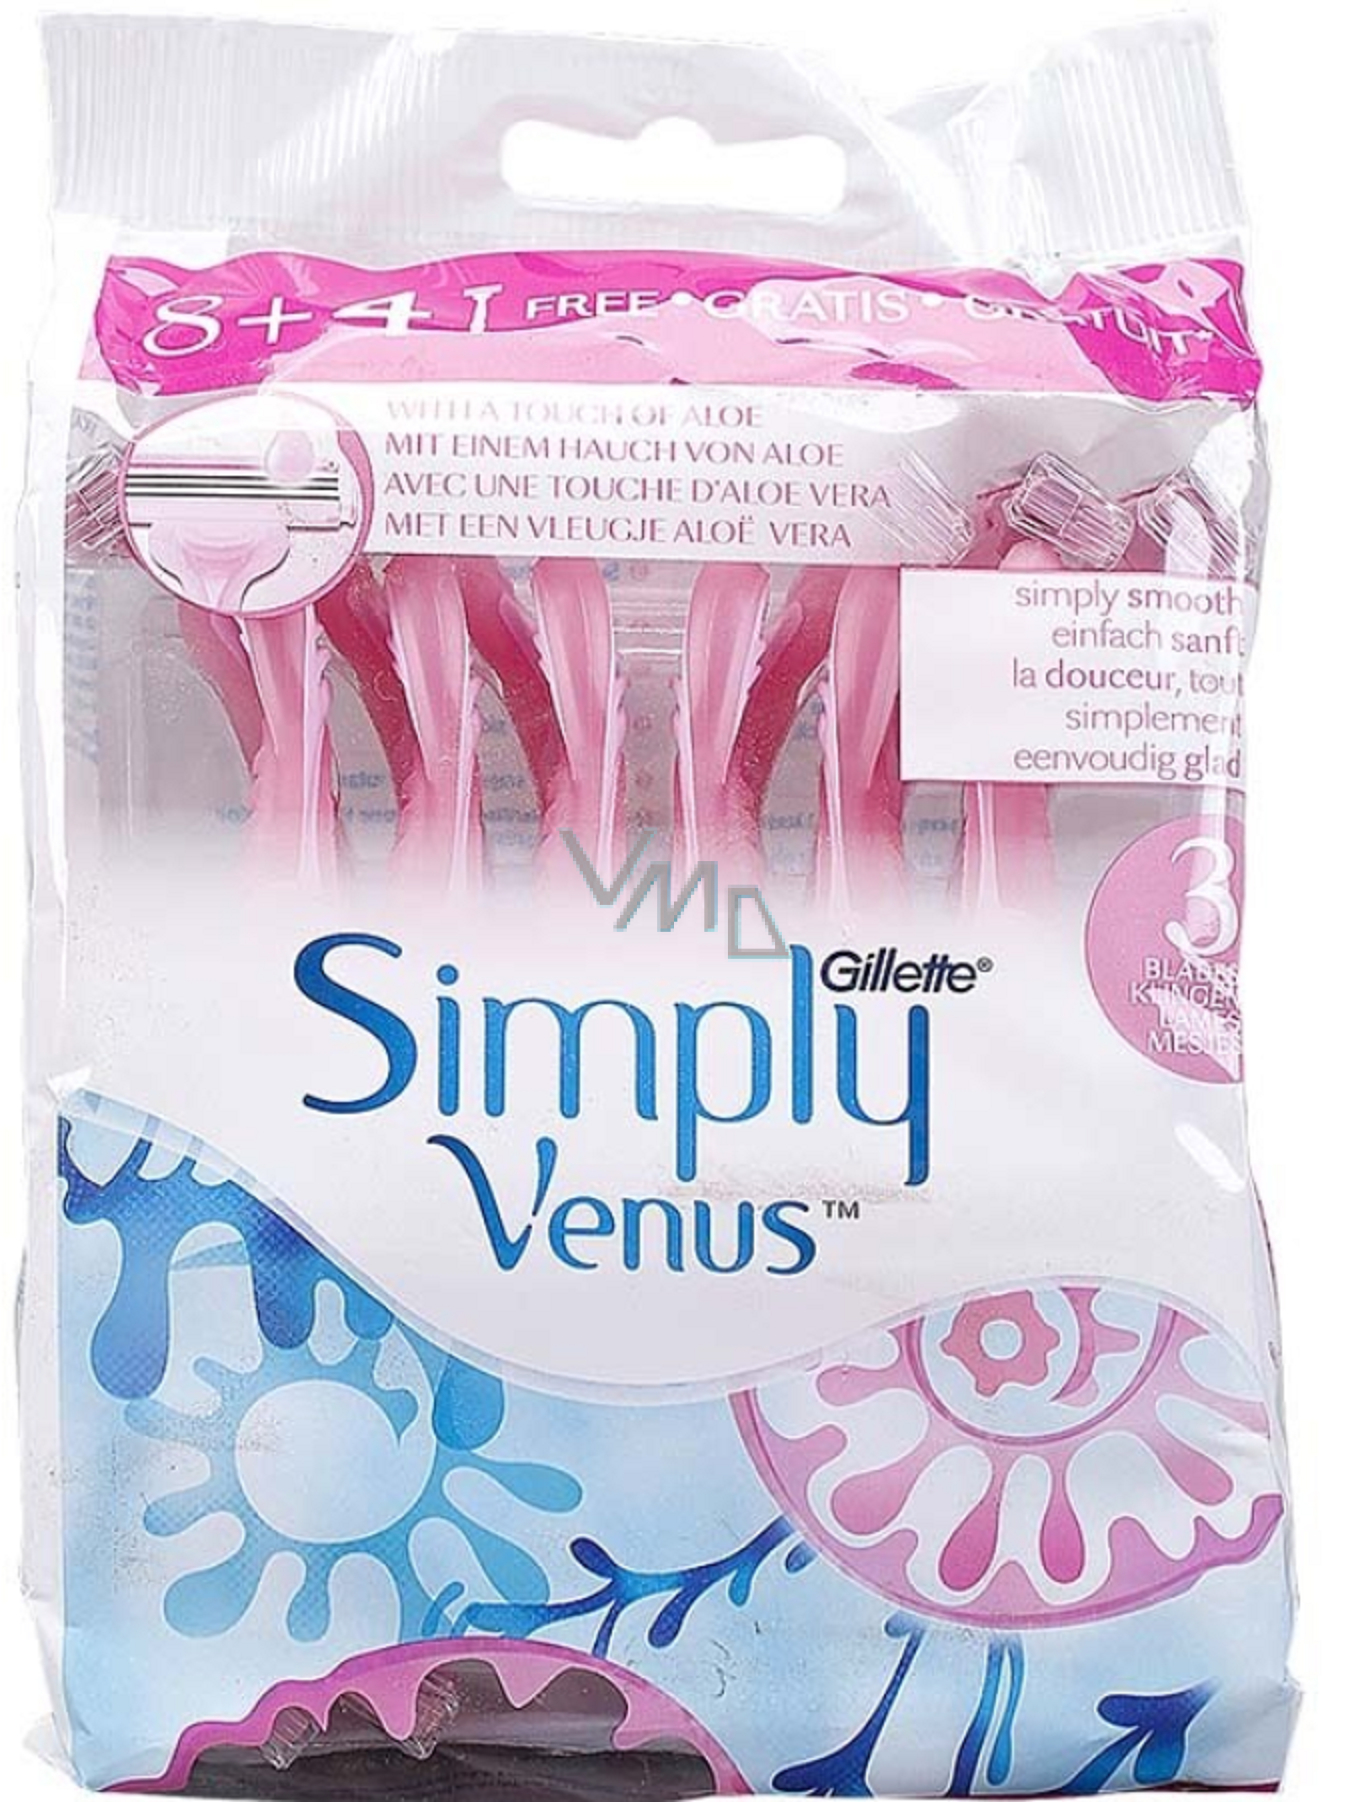 binden herder Numeriek Gillette Venus Simply 3 blades razors for women 12 pieces - VMD parfumerie  - drogerie